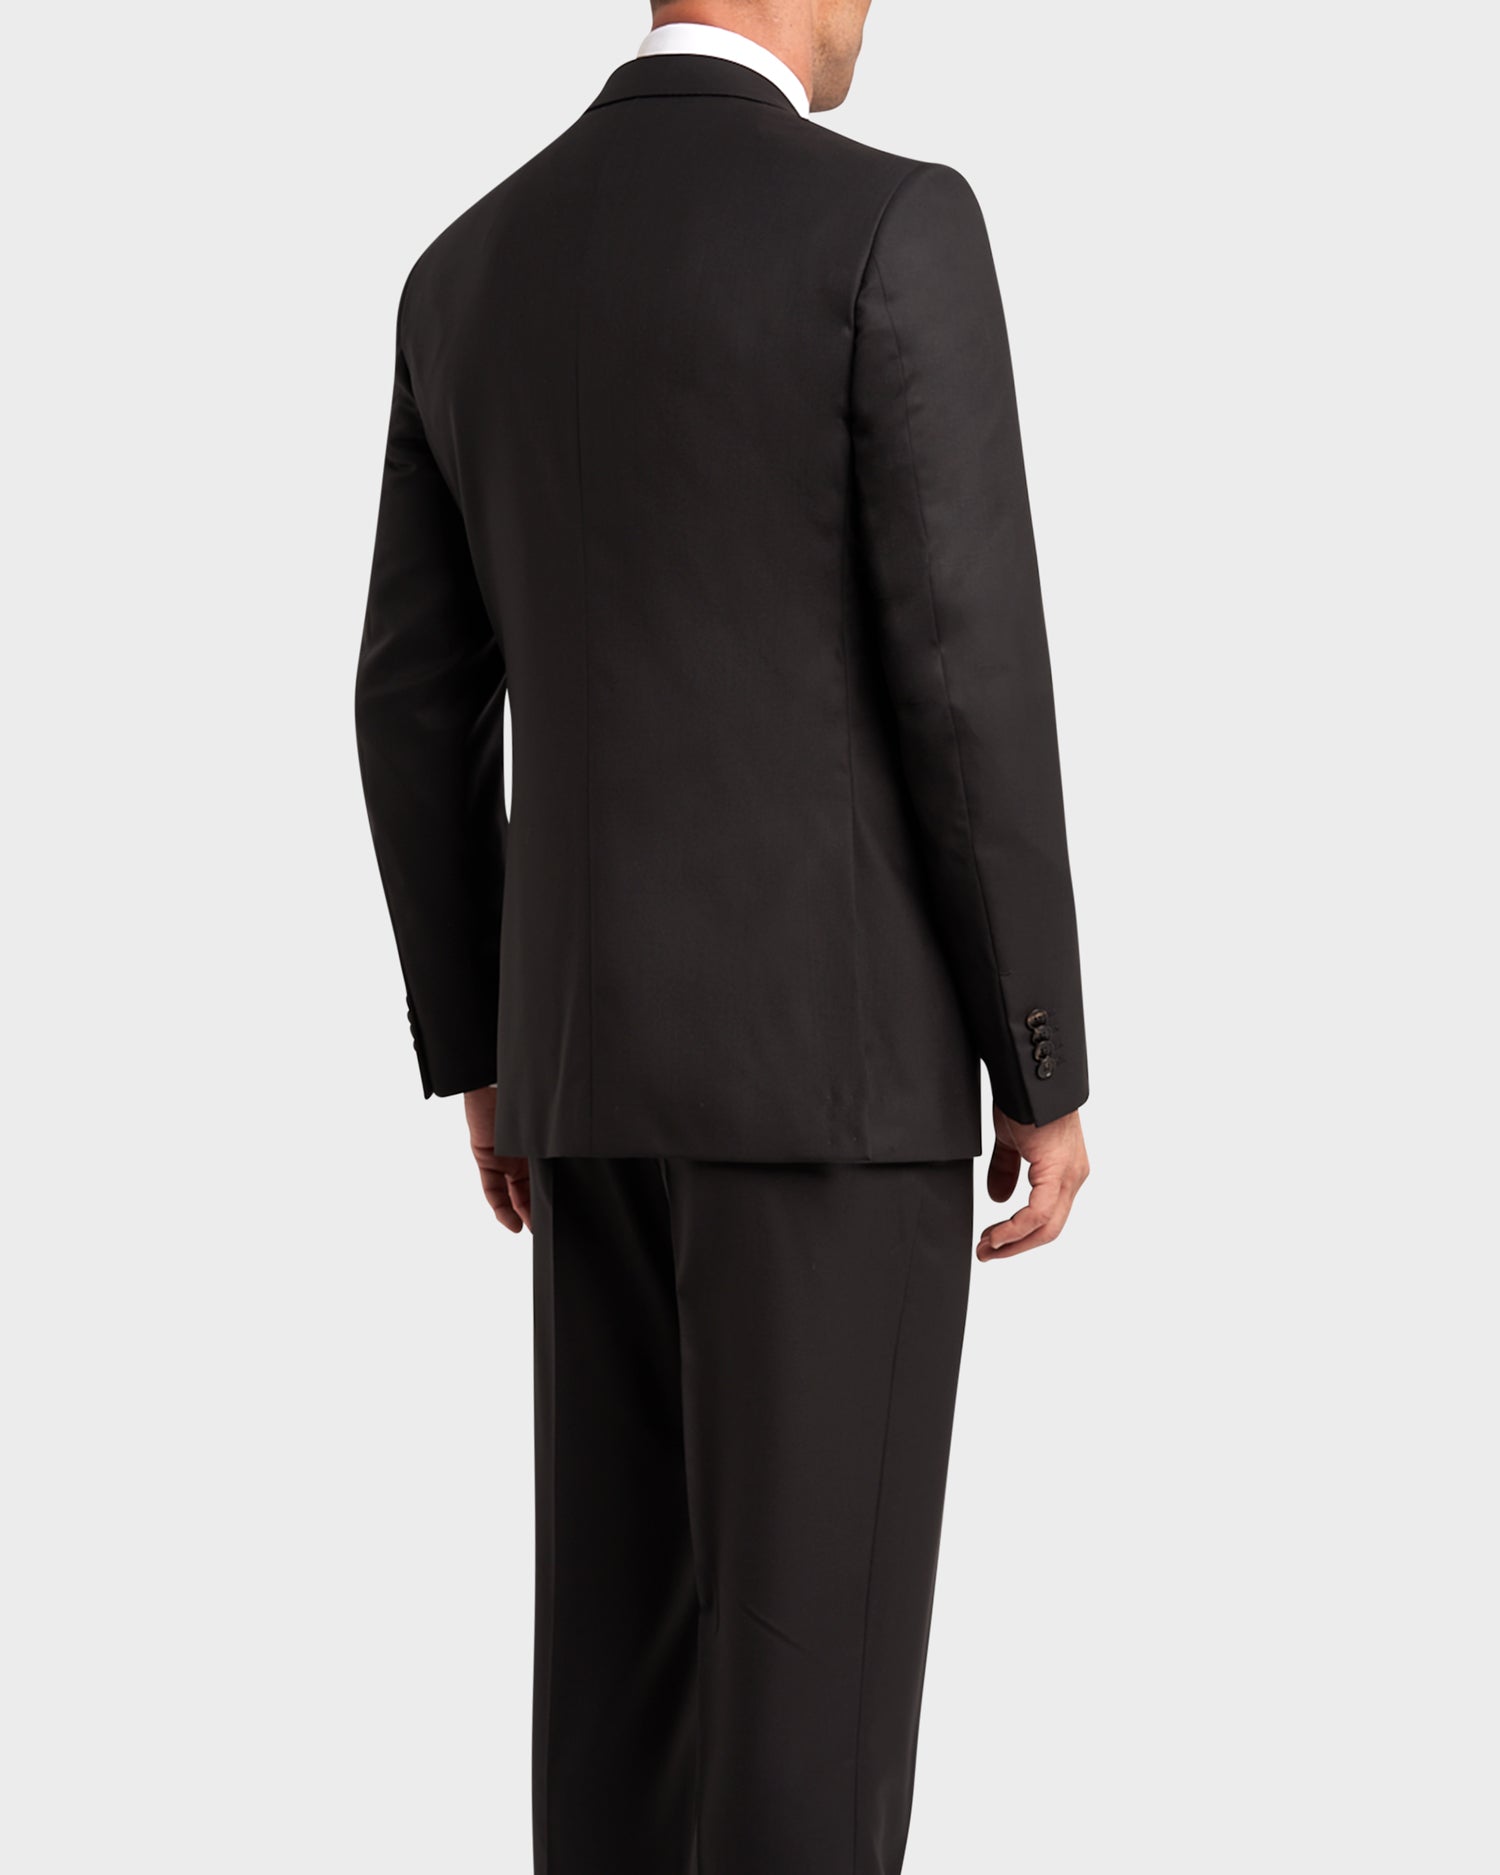 Black Microcheck 15MILMIL15 Wool Suit